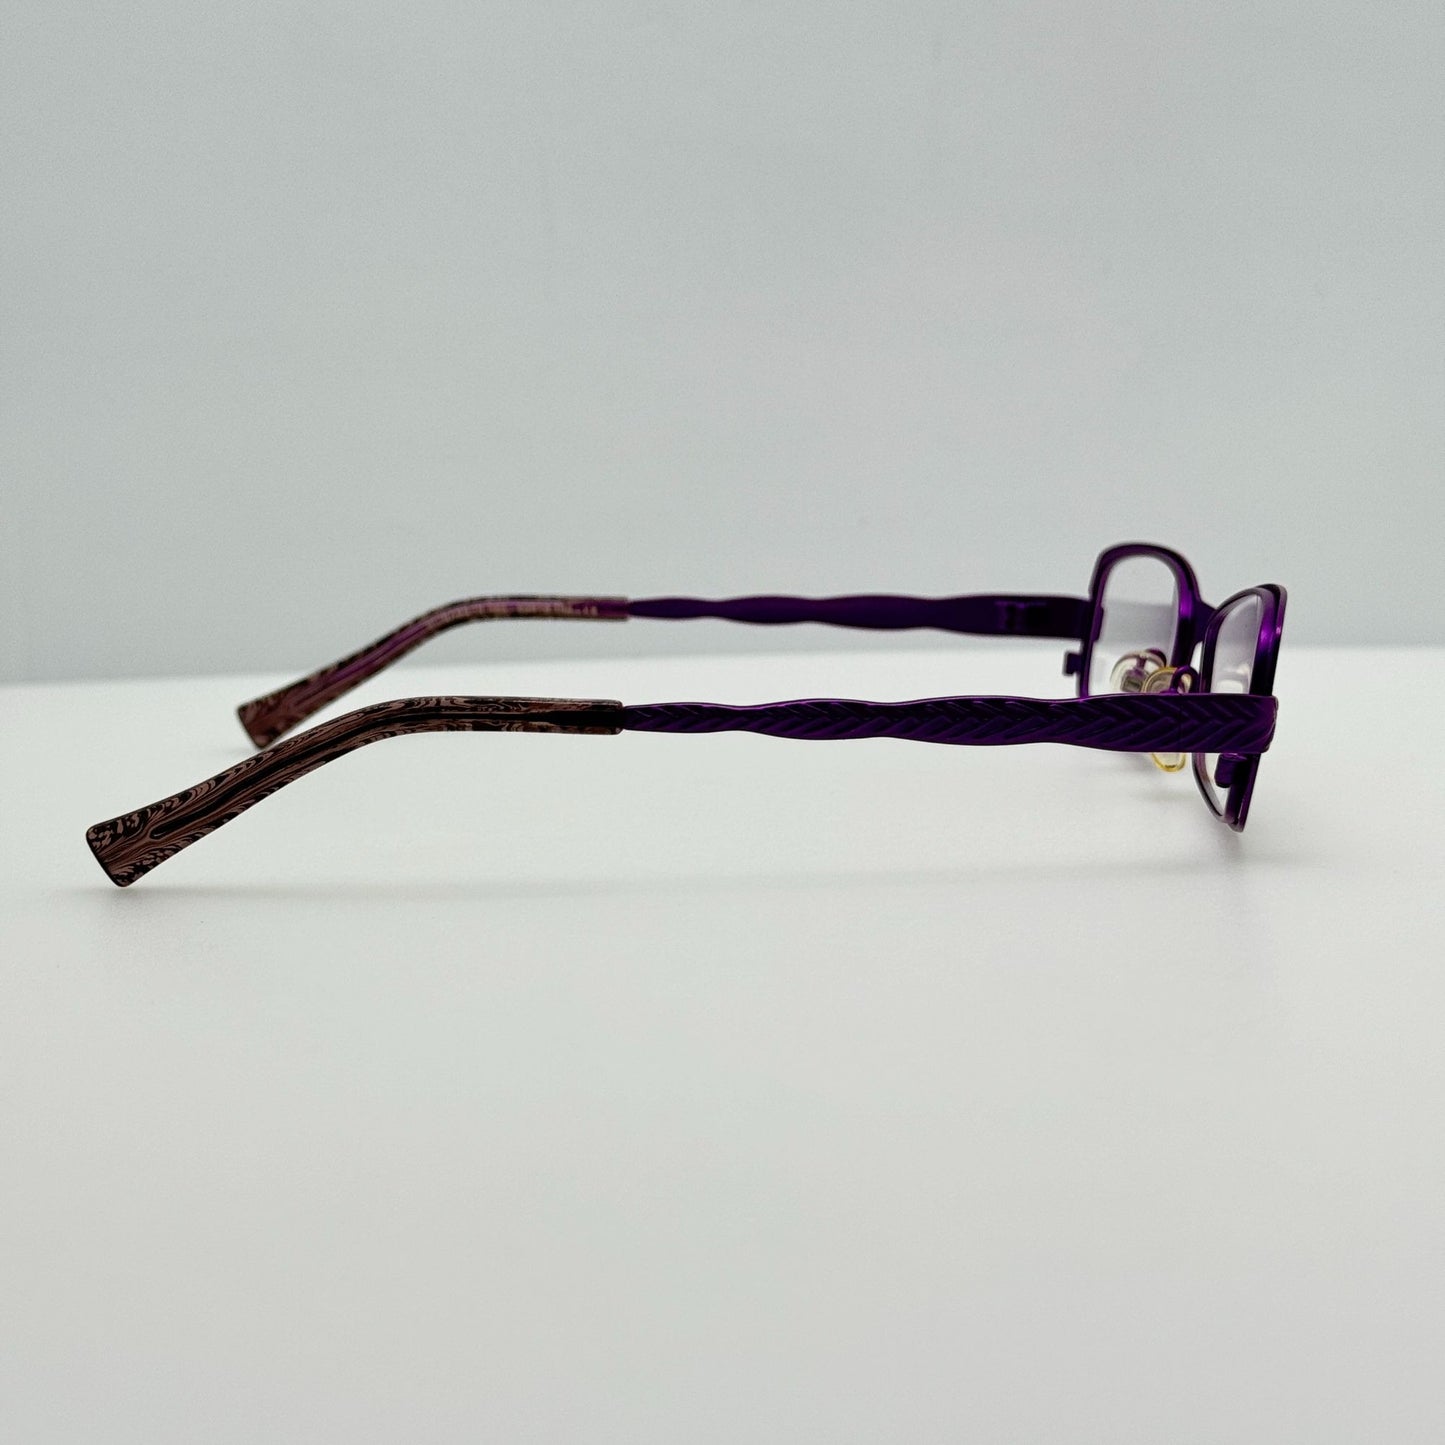 Jean Lafont Eyeglasses Eye Glasses Frames Elisabeth 282 France 52-18-135